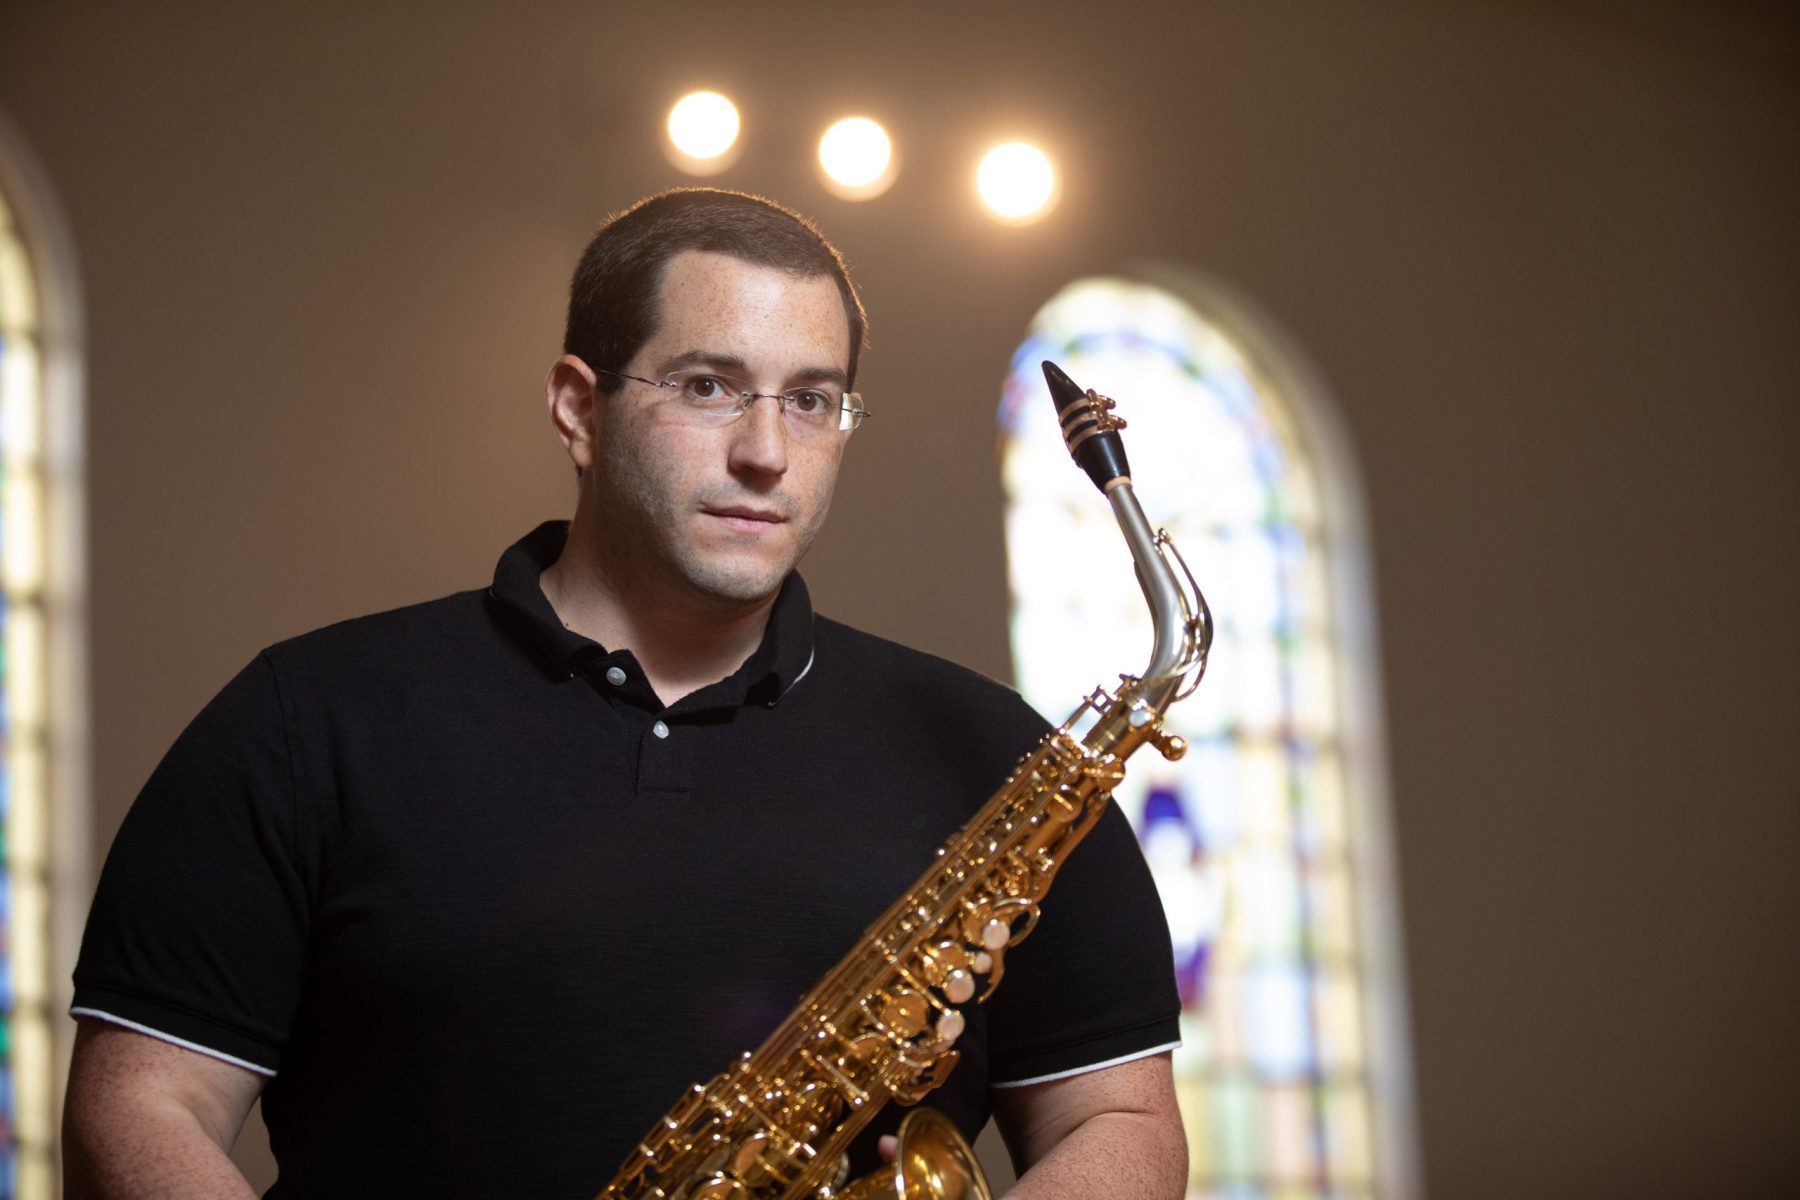 Photo of Anthony Cincotta holding saxophone